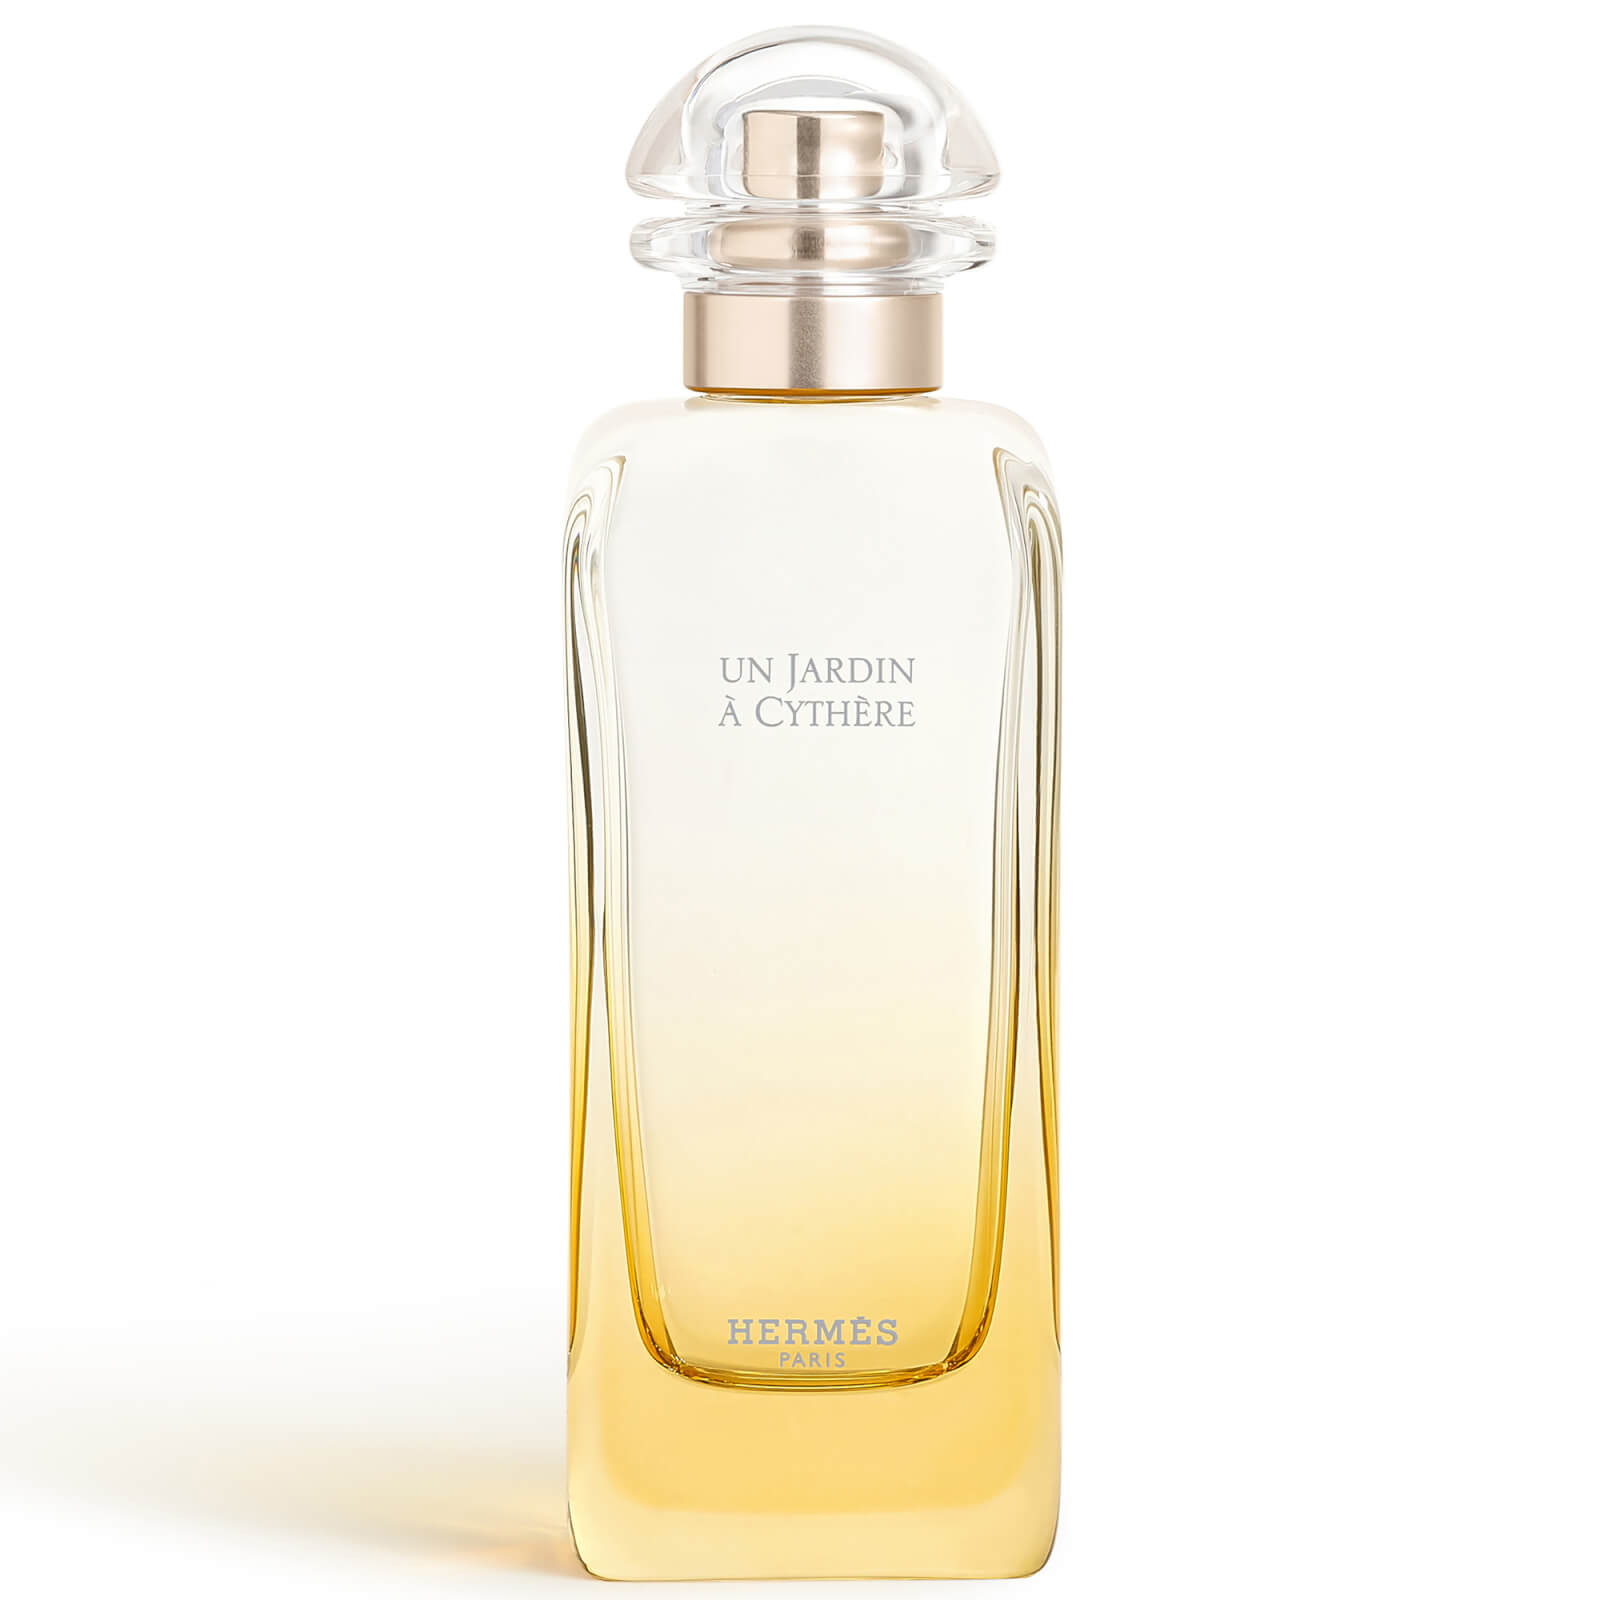 Photos - Women's Fragrance Hermes Hermès Un Jardin à Cythère Eau de Toilette Refillable Natural Spray 100ml 